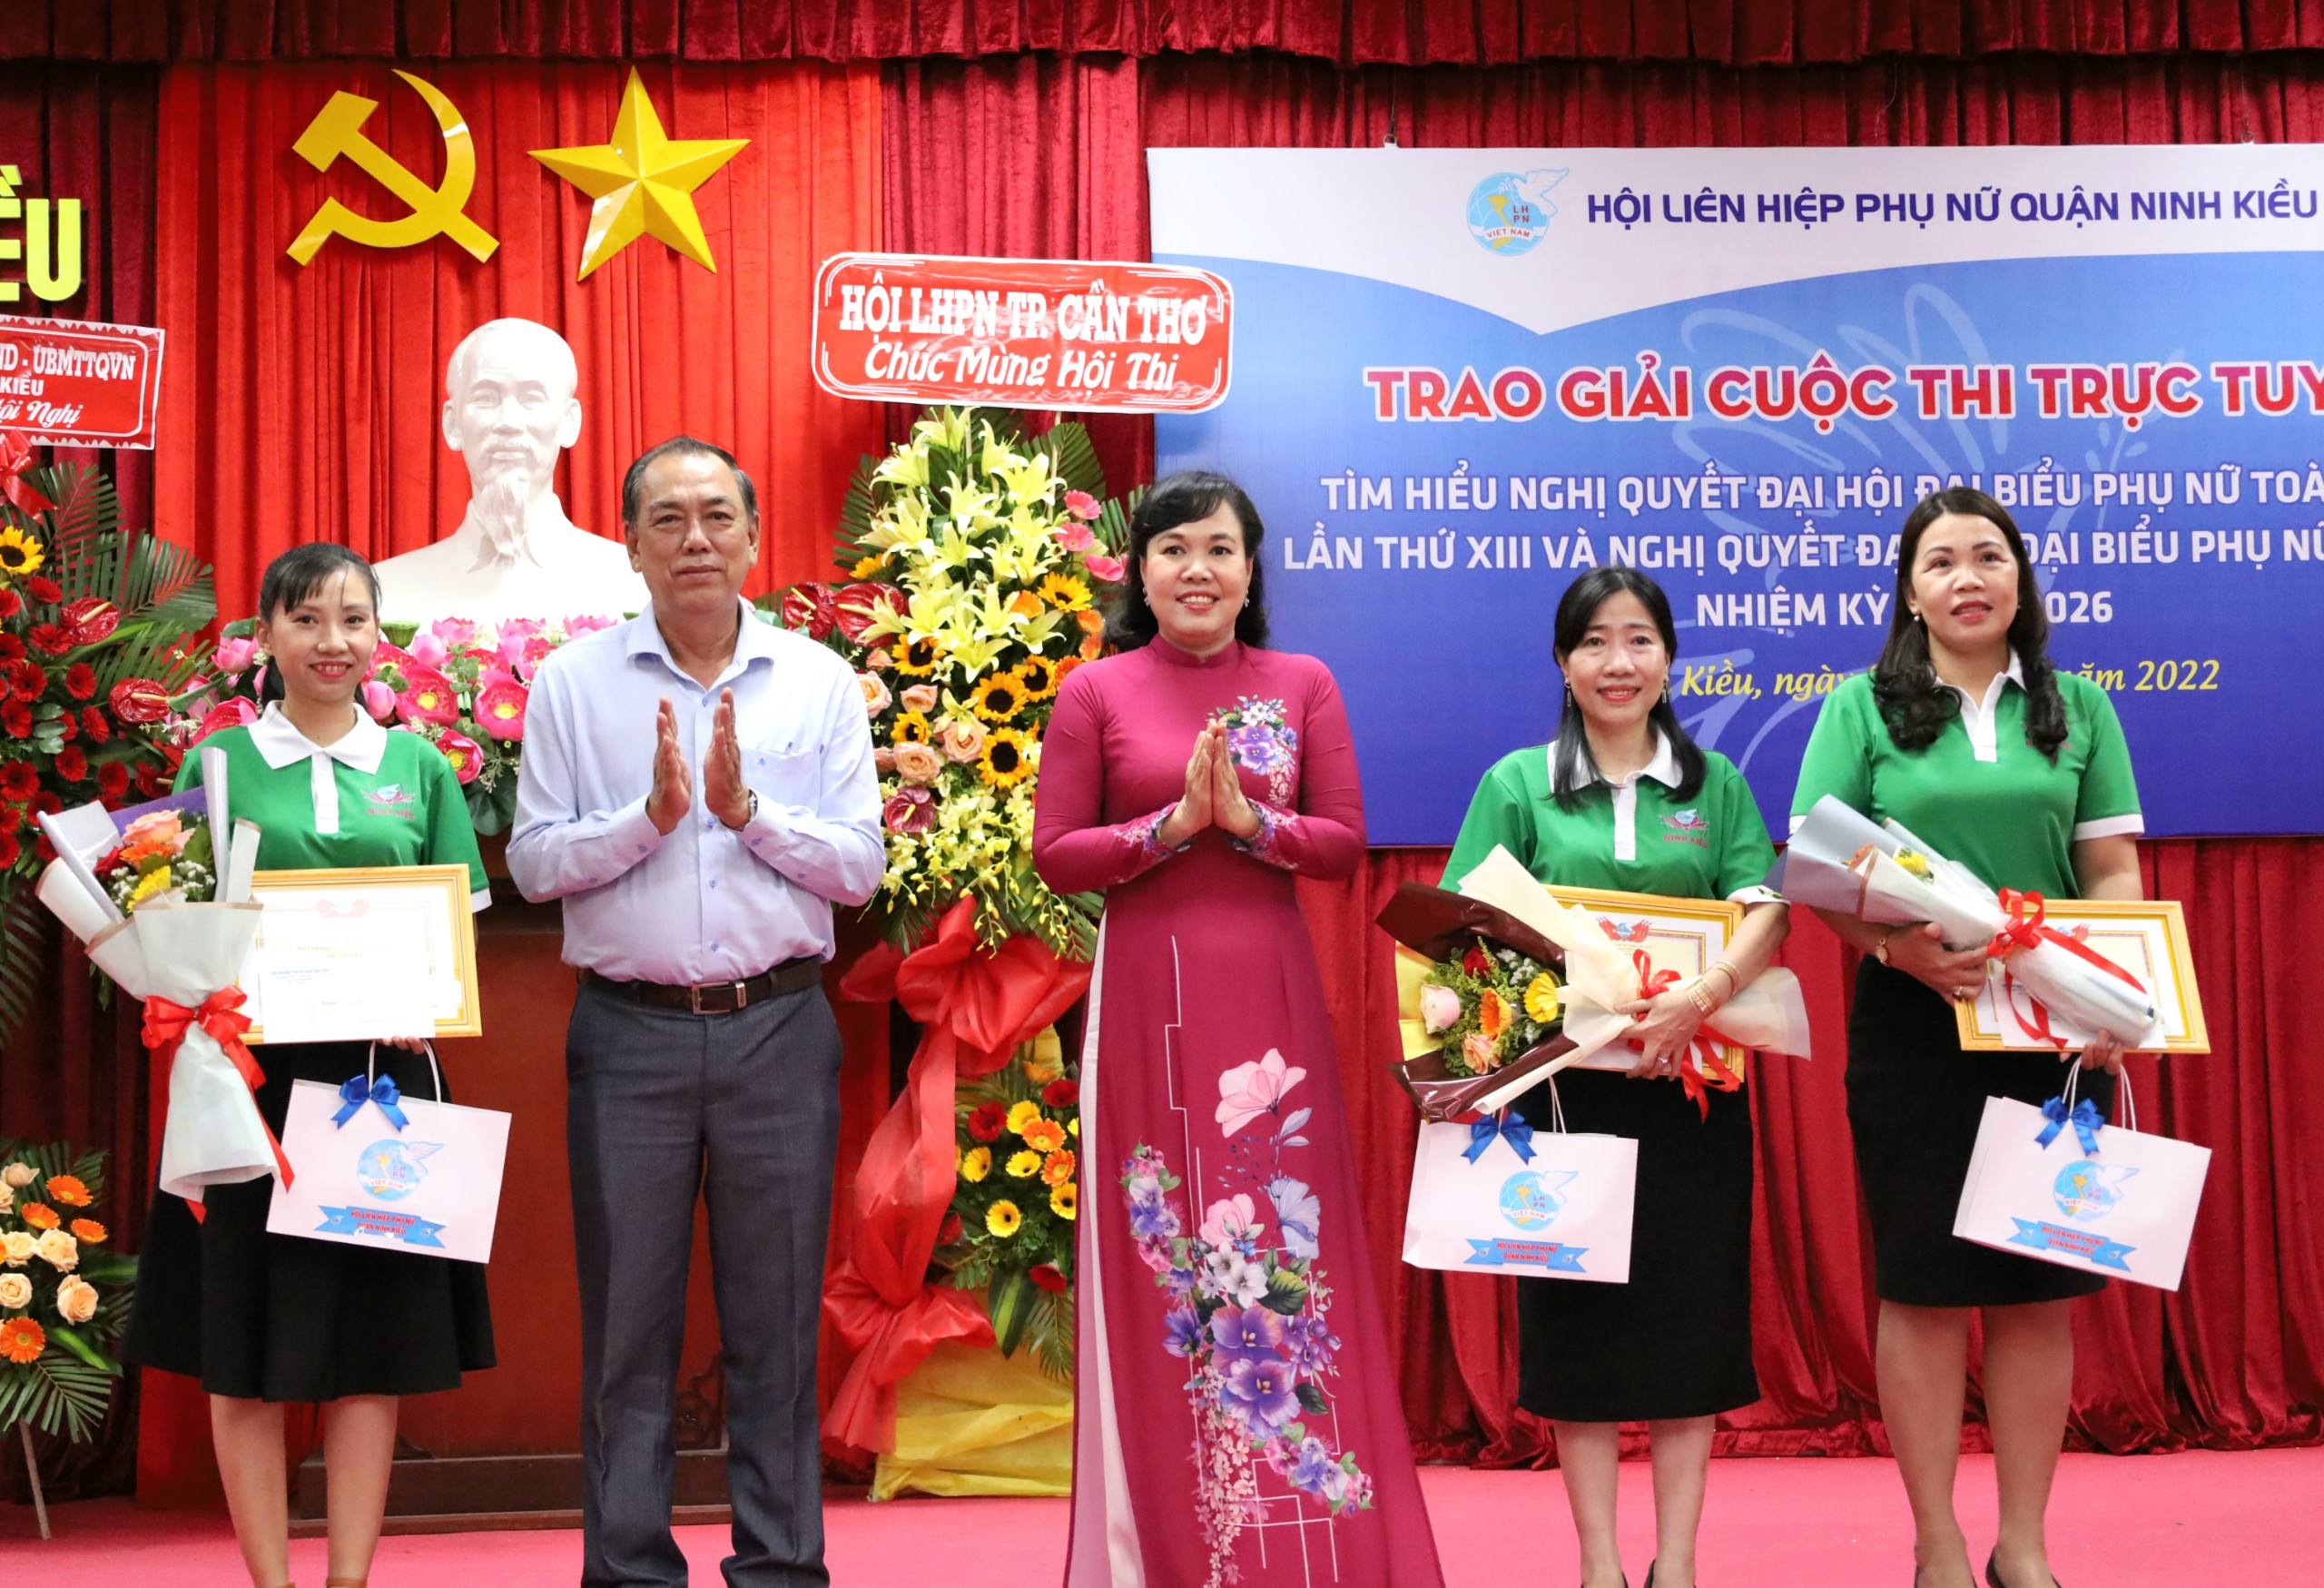 Bà Võ Kim Thoa - Chủ tịch Hội LHPN TP. Cần Thơ và ông Lâm Trọng Thắng – Trưởng Ban Tuyên giáo Quận ủy Ninh Kiều trao giải cho các tập thể xuất sắc hội thi.